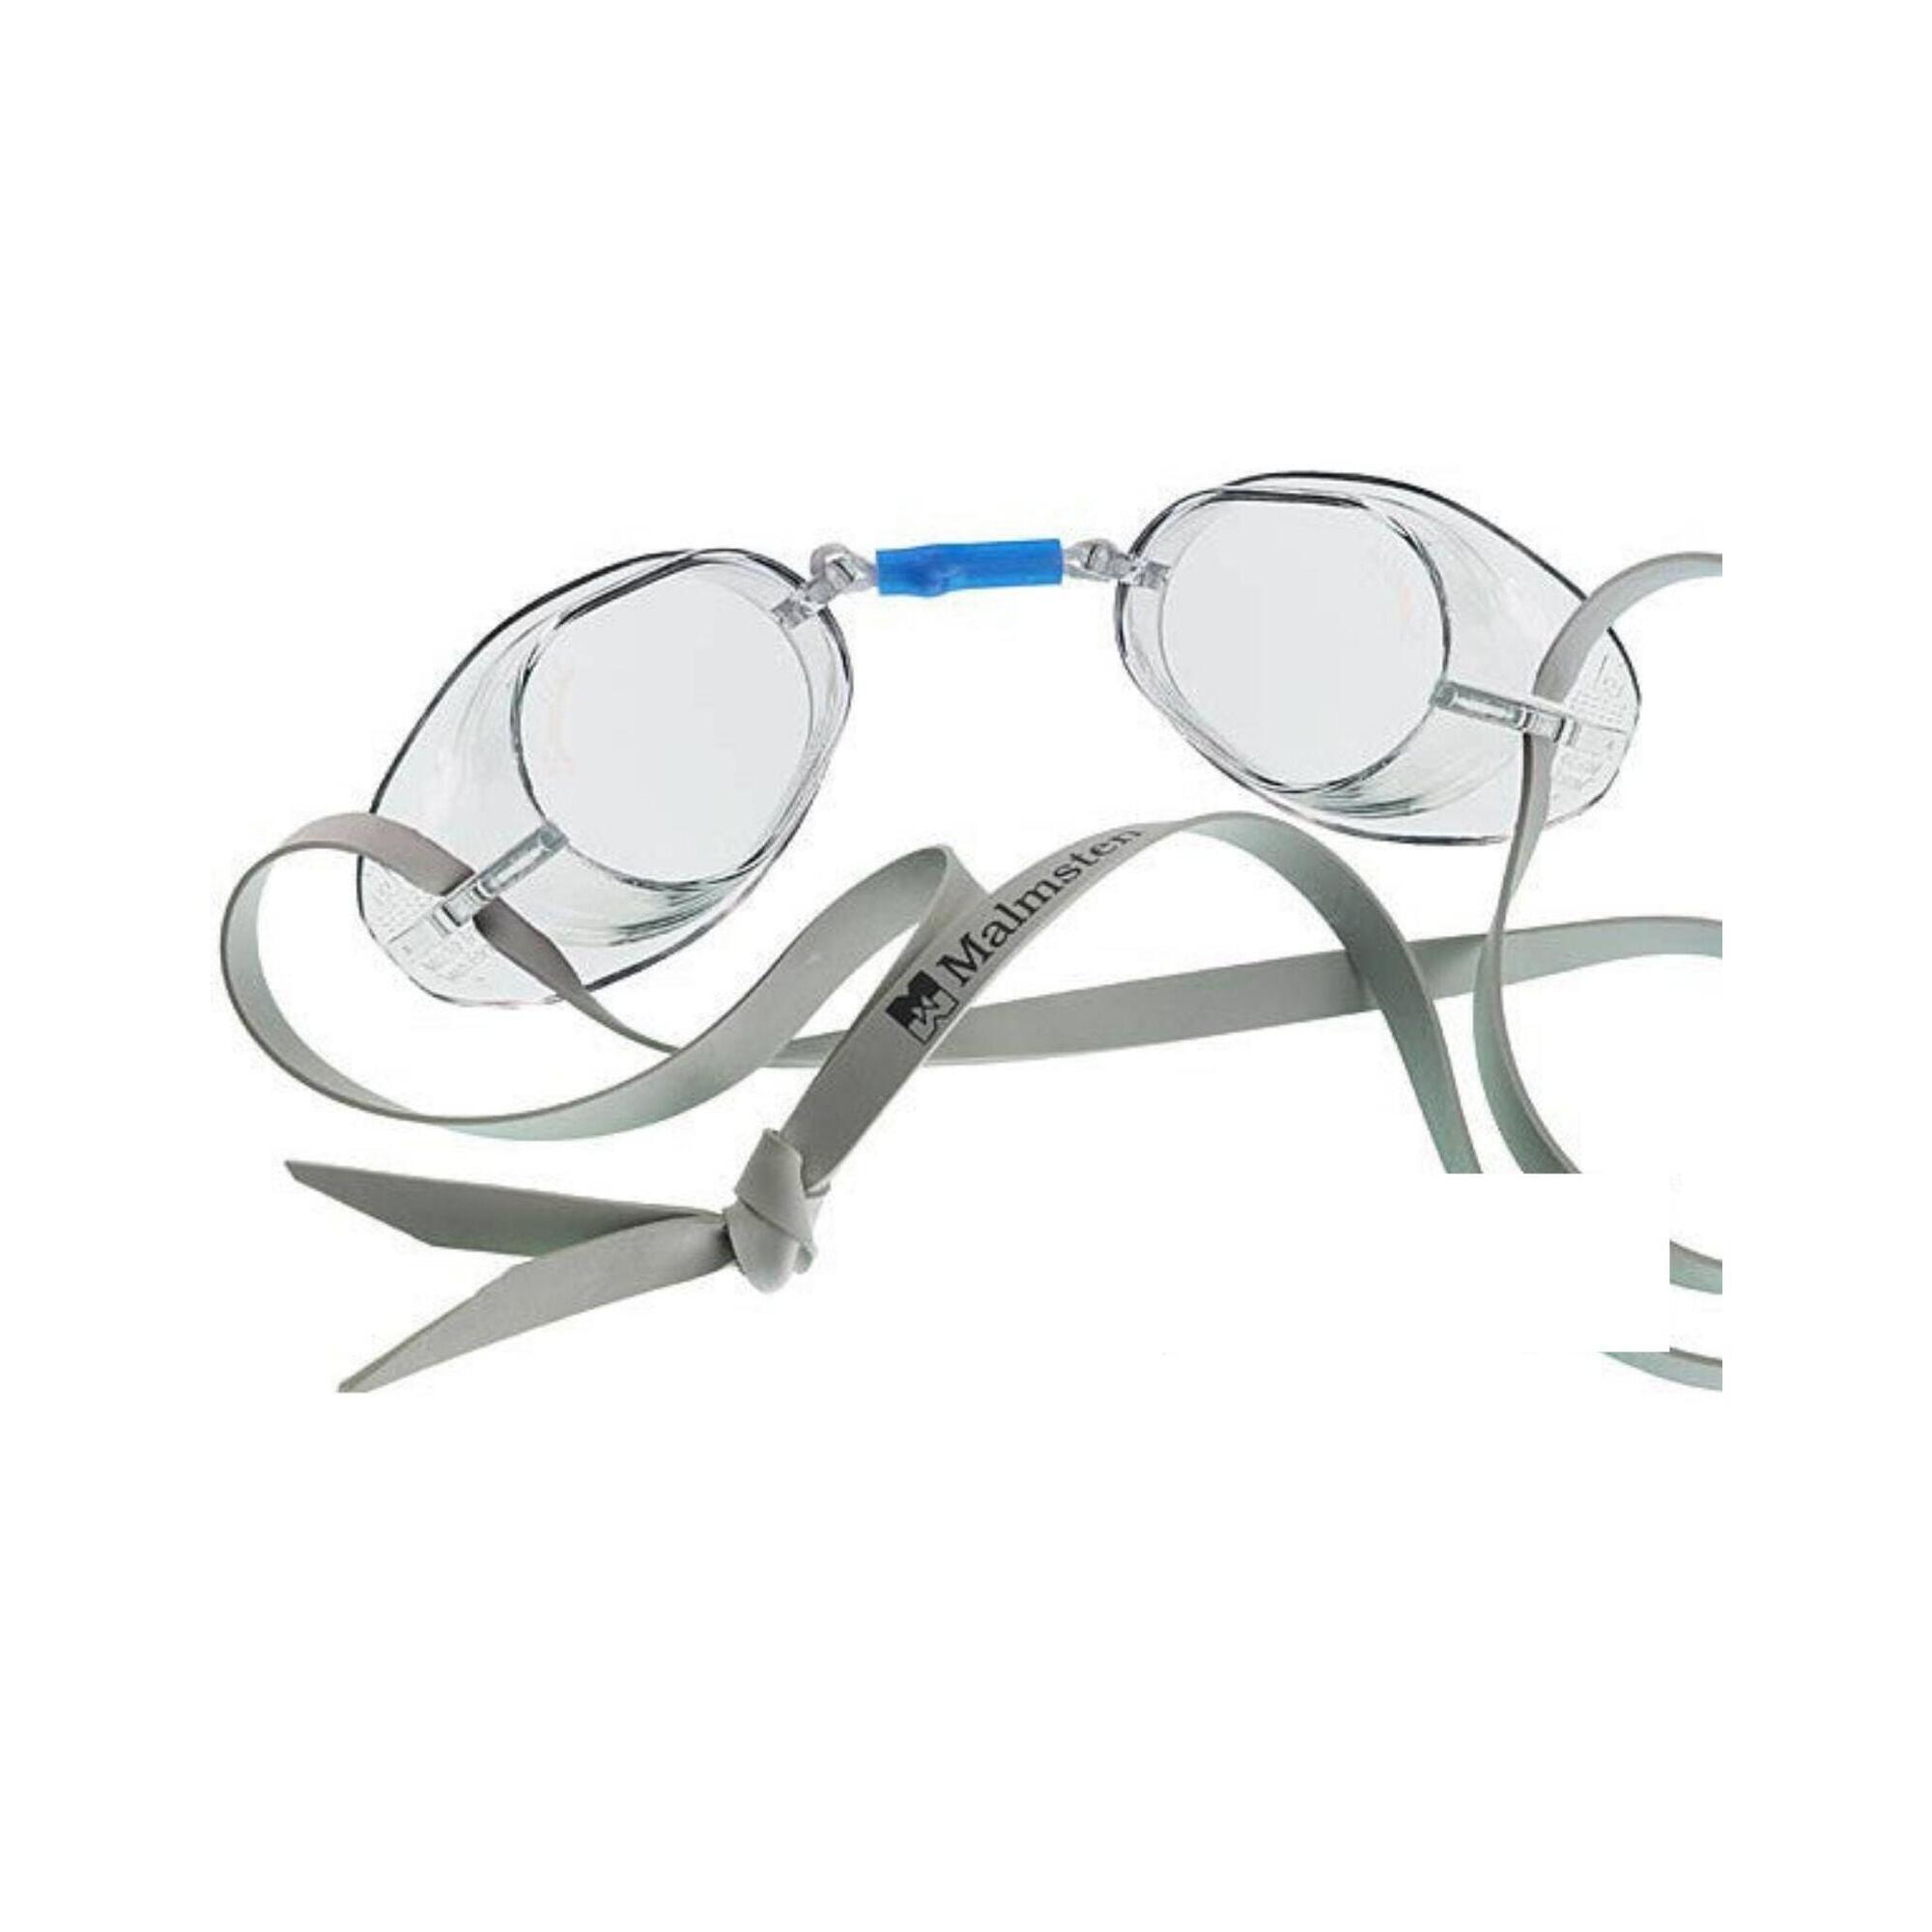 MALMSTEN Malmsten Swedish Competition Swim Goggles - Clear